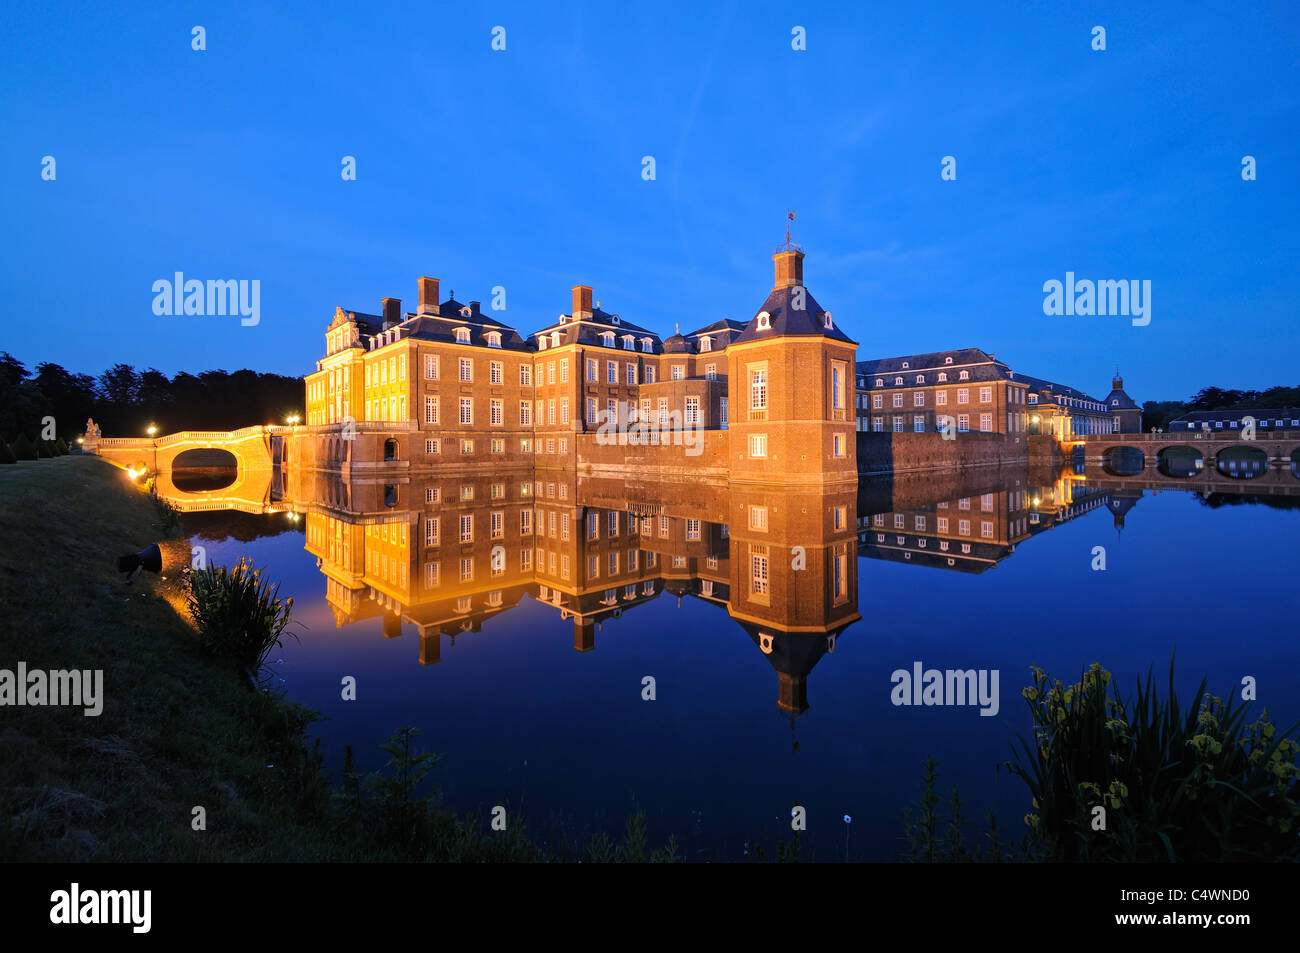 Photo de nuit de l'eau dans un grand château Nordkirchen, Westphalie, Allemagne. Banque D'Images